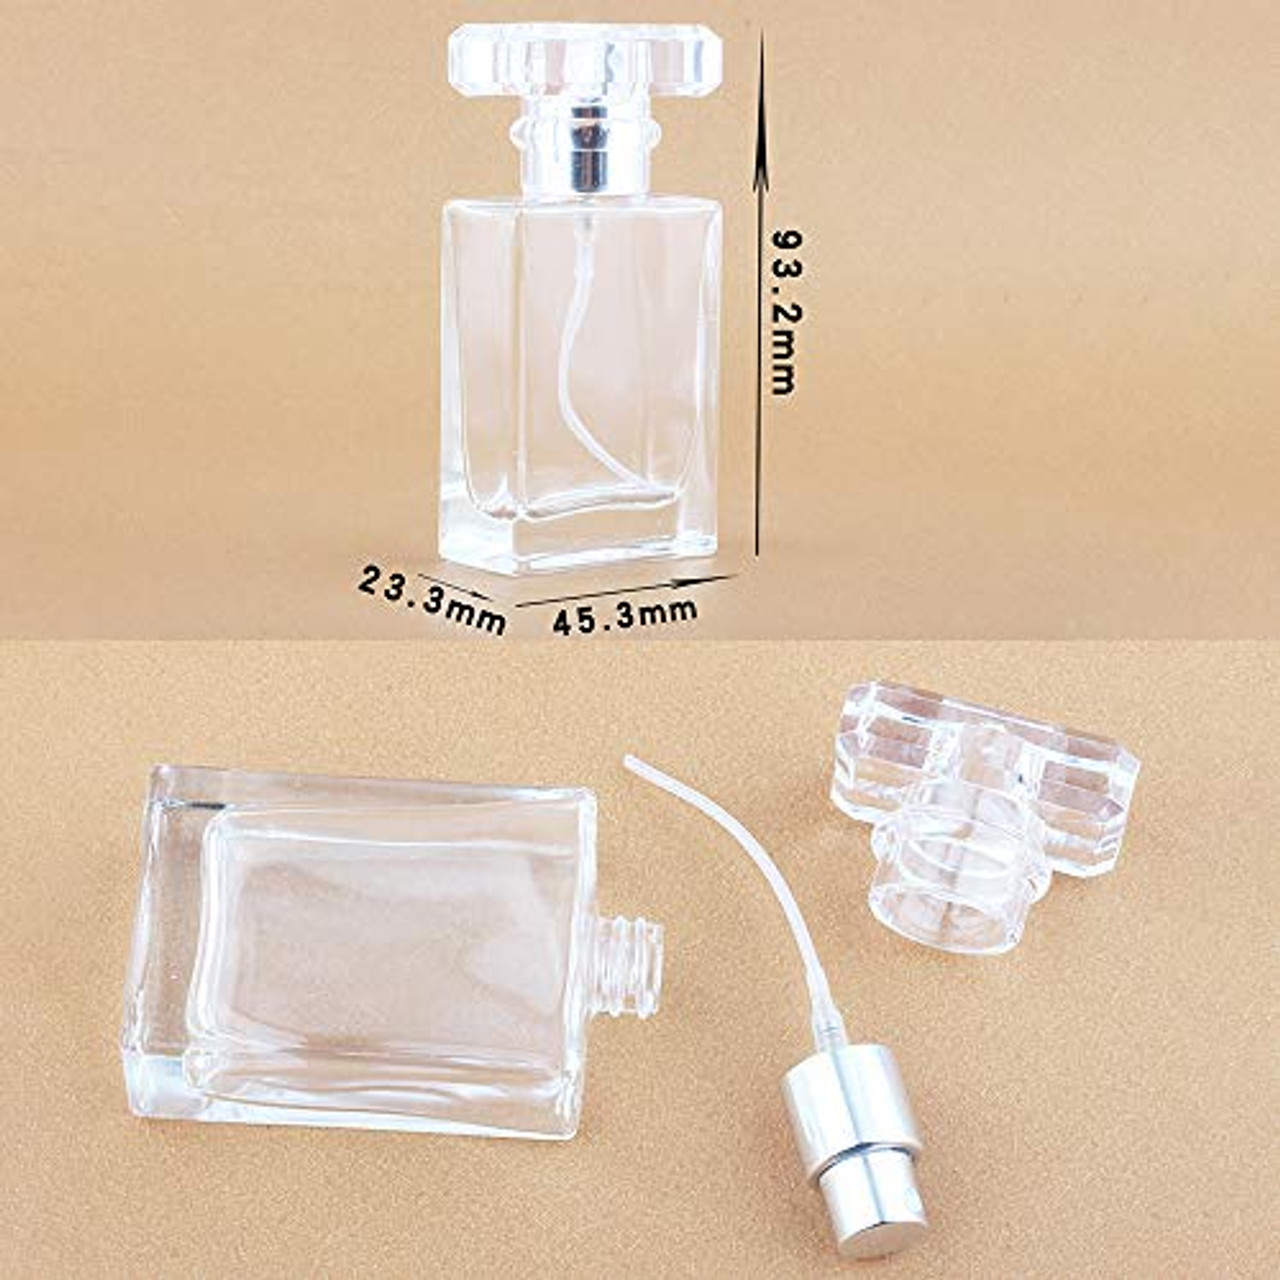 Travel atomiser perfume bottle 5ml dispenser, CATEGORIES \ Beauty \ Others